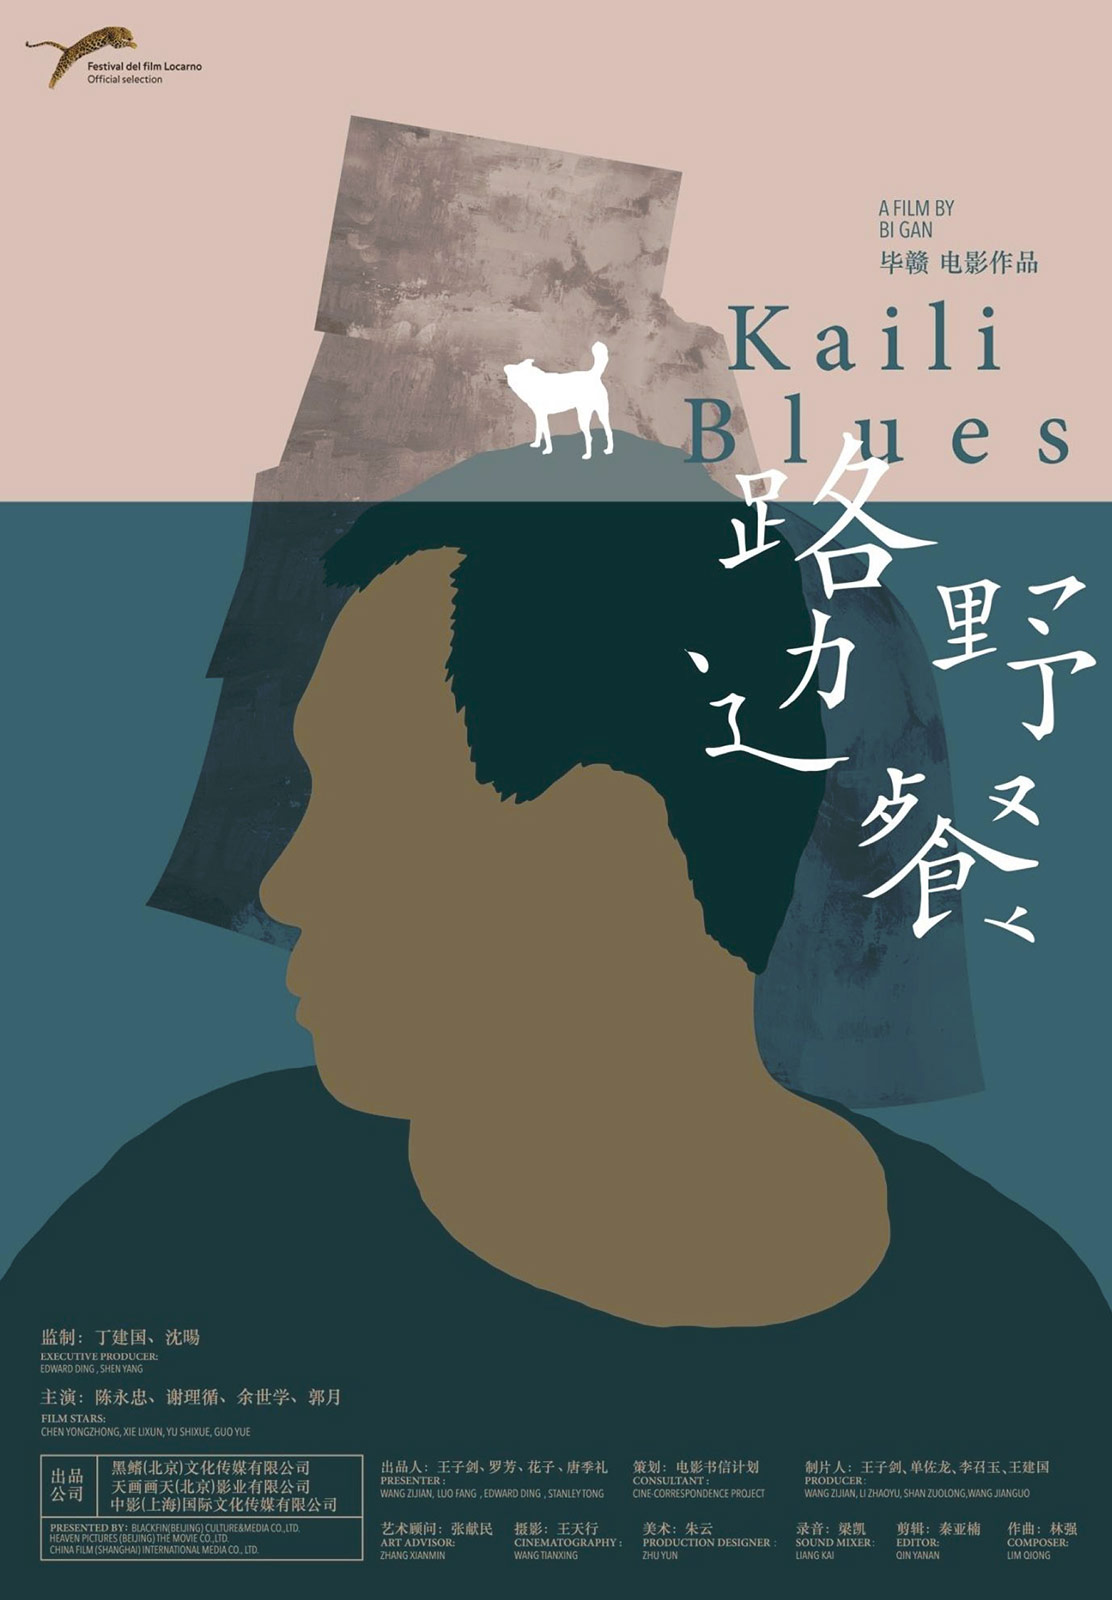 Kaili Blues Bilder Und Fotos Filmstarts De